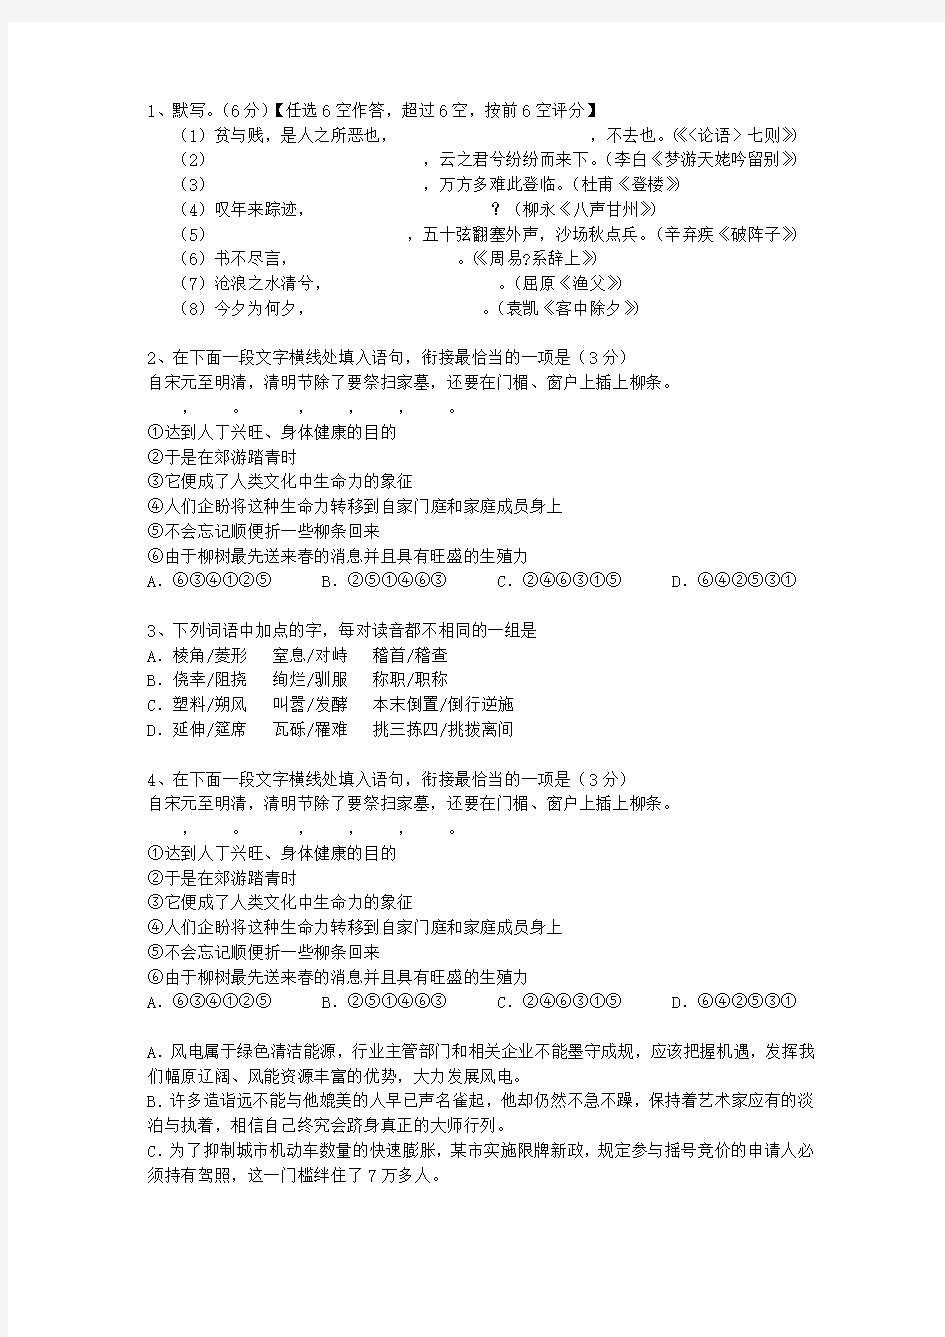 2013吉林省语文大纲(答案详解版)最新考试试题库(完整版)